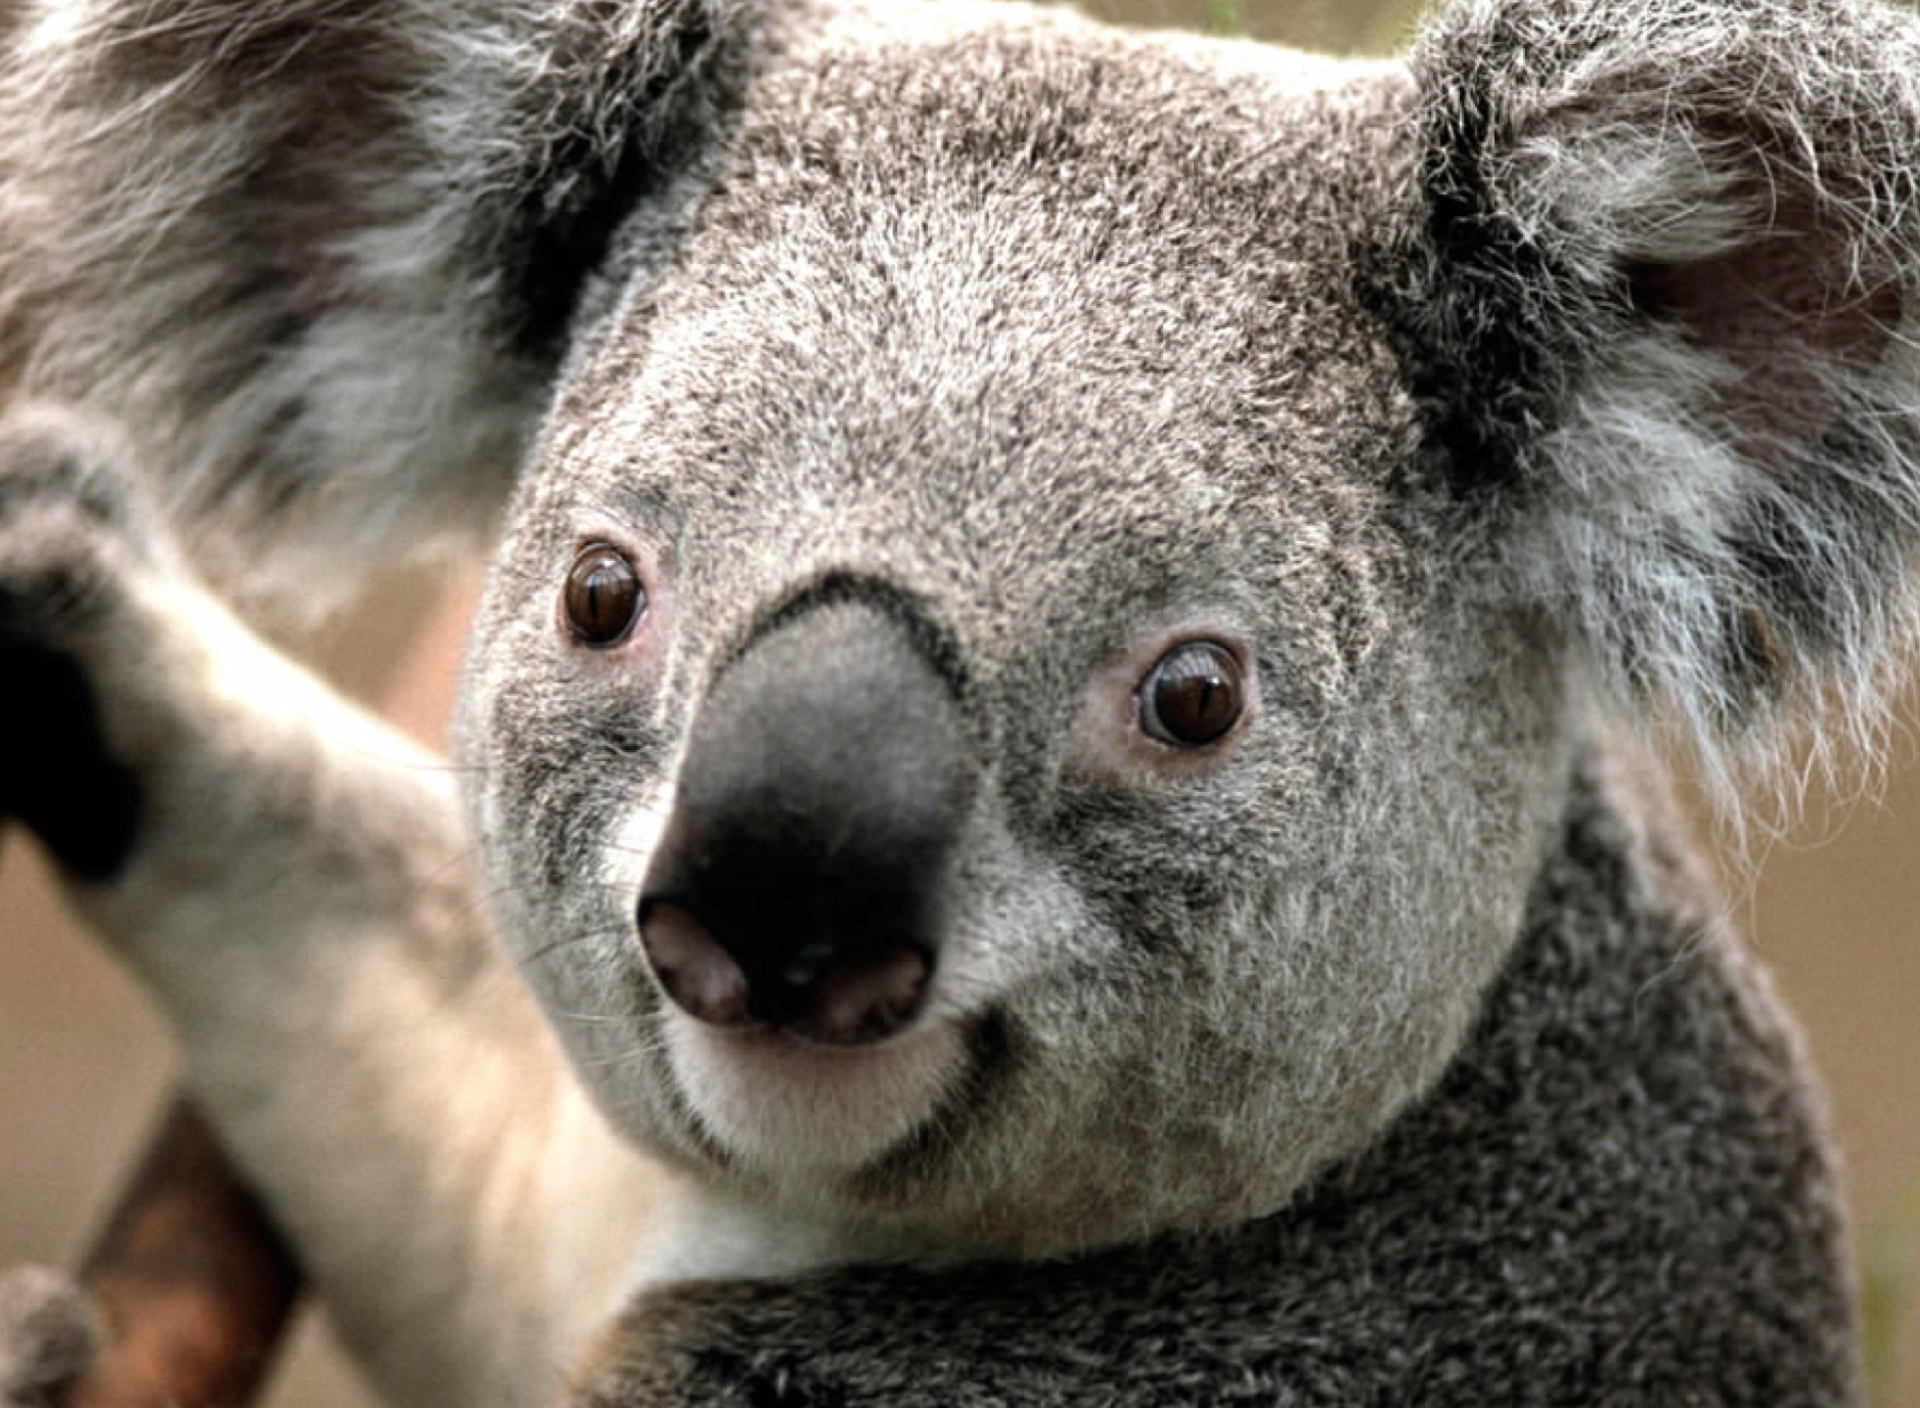 Koala by J. R. A. K. screenshot #1 1920x1408